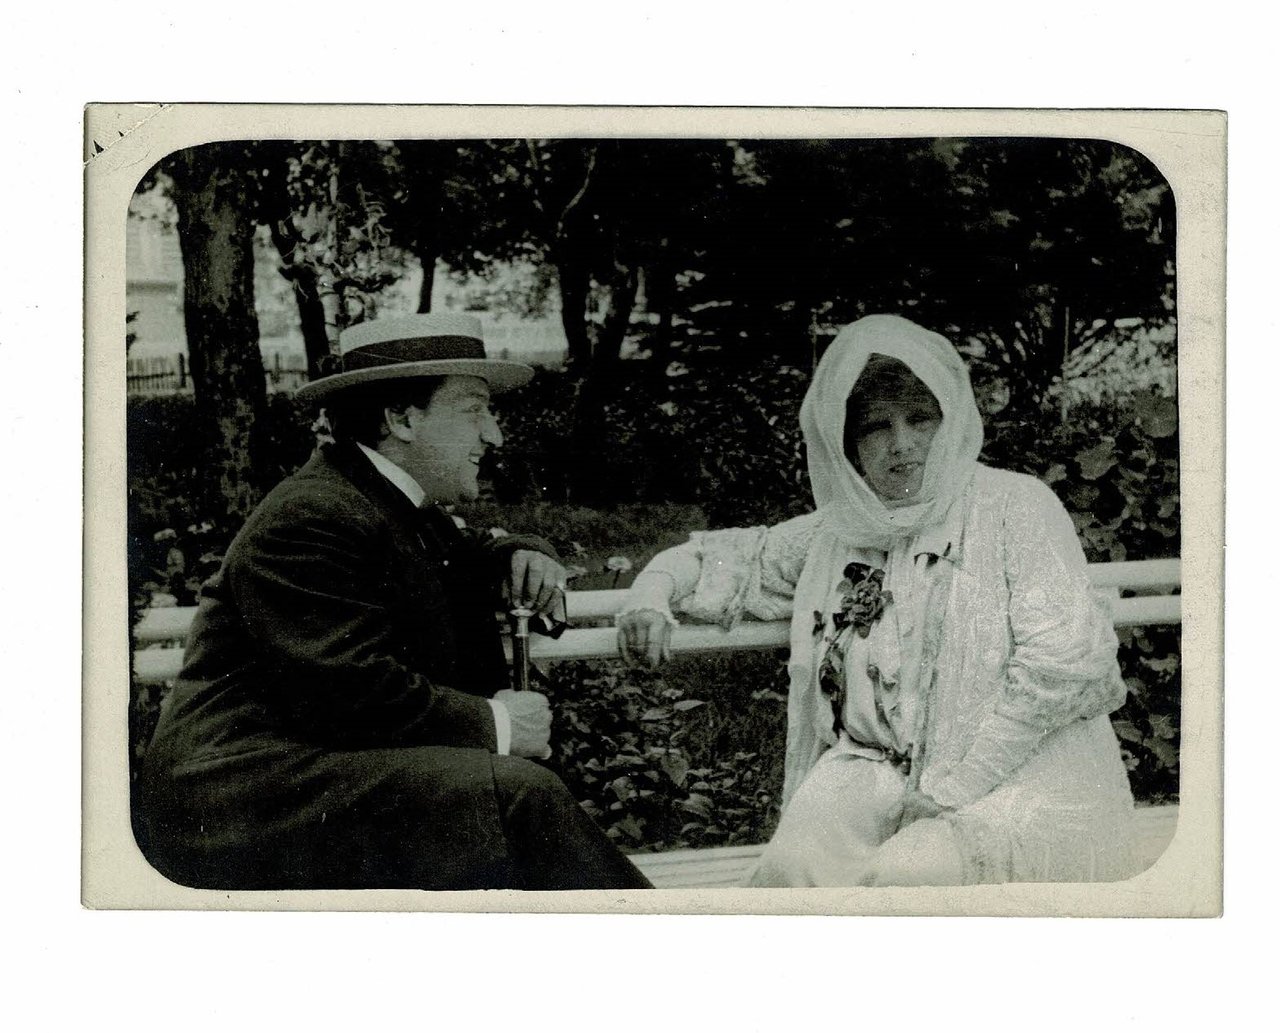 [PHOTOGRAPHIE] Portrait photographique de Sacha Guitry et Sarah Bernhardt réalisée …